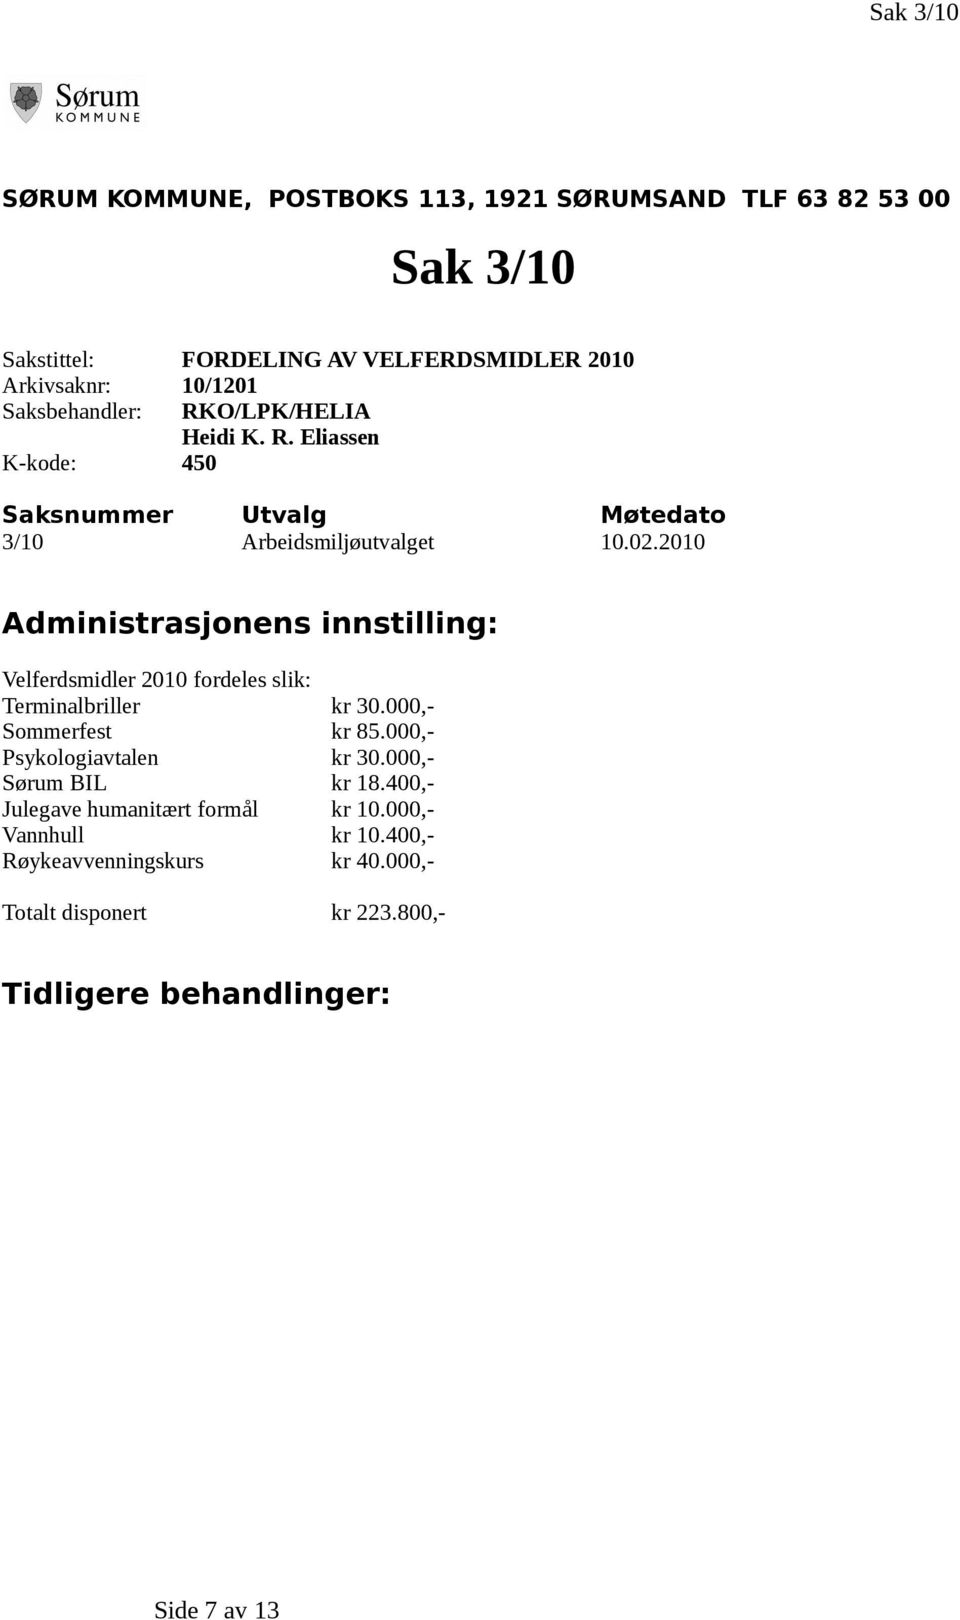 2010 Administrasjonens innstilling: Velferdsmidler 2010 fordeles slik: Terminalbriller kr 30.000,- Sommerfest kr 85.000,- Psykologiavtalen kr 30.